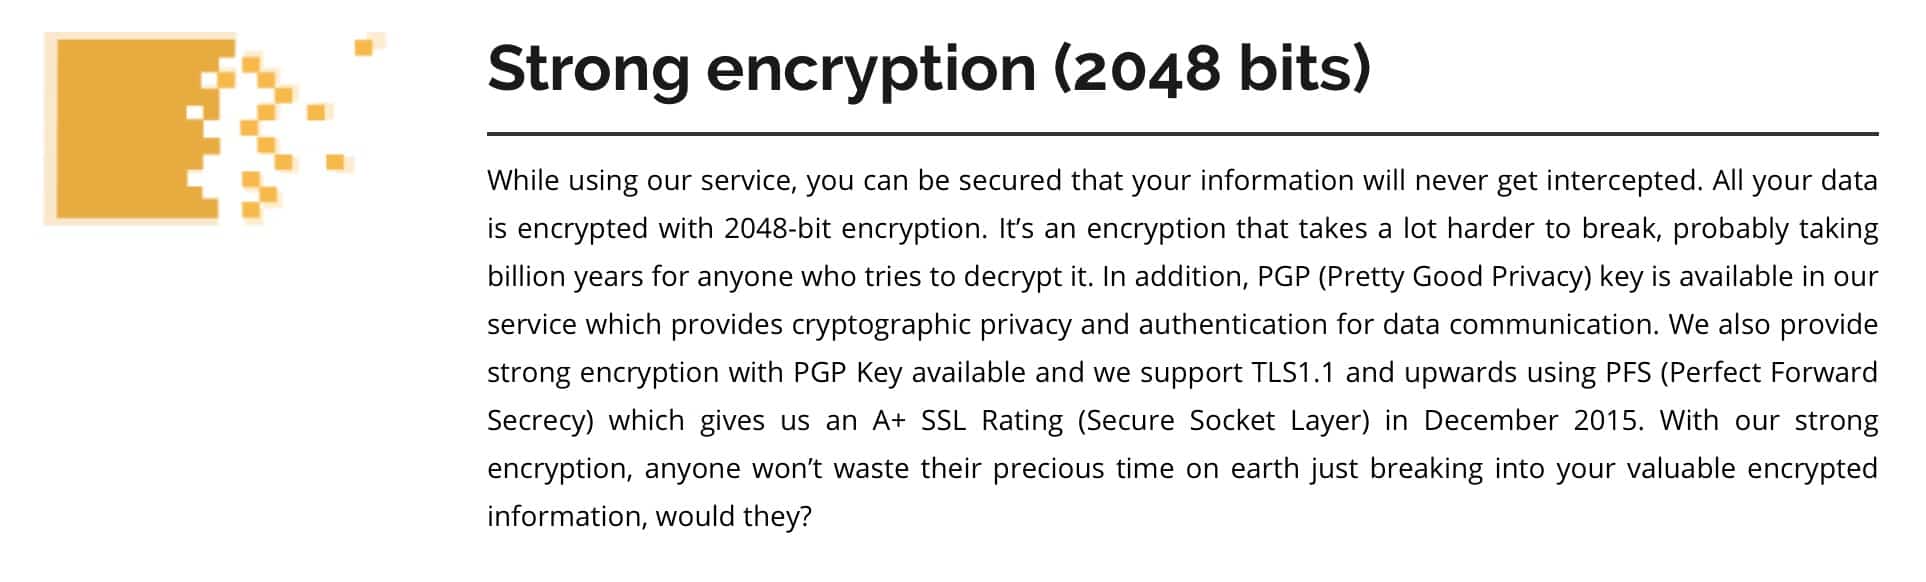 FrootVPN - Encryption